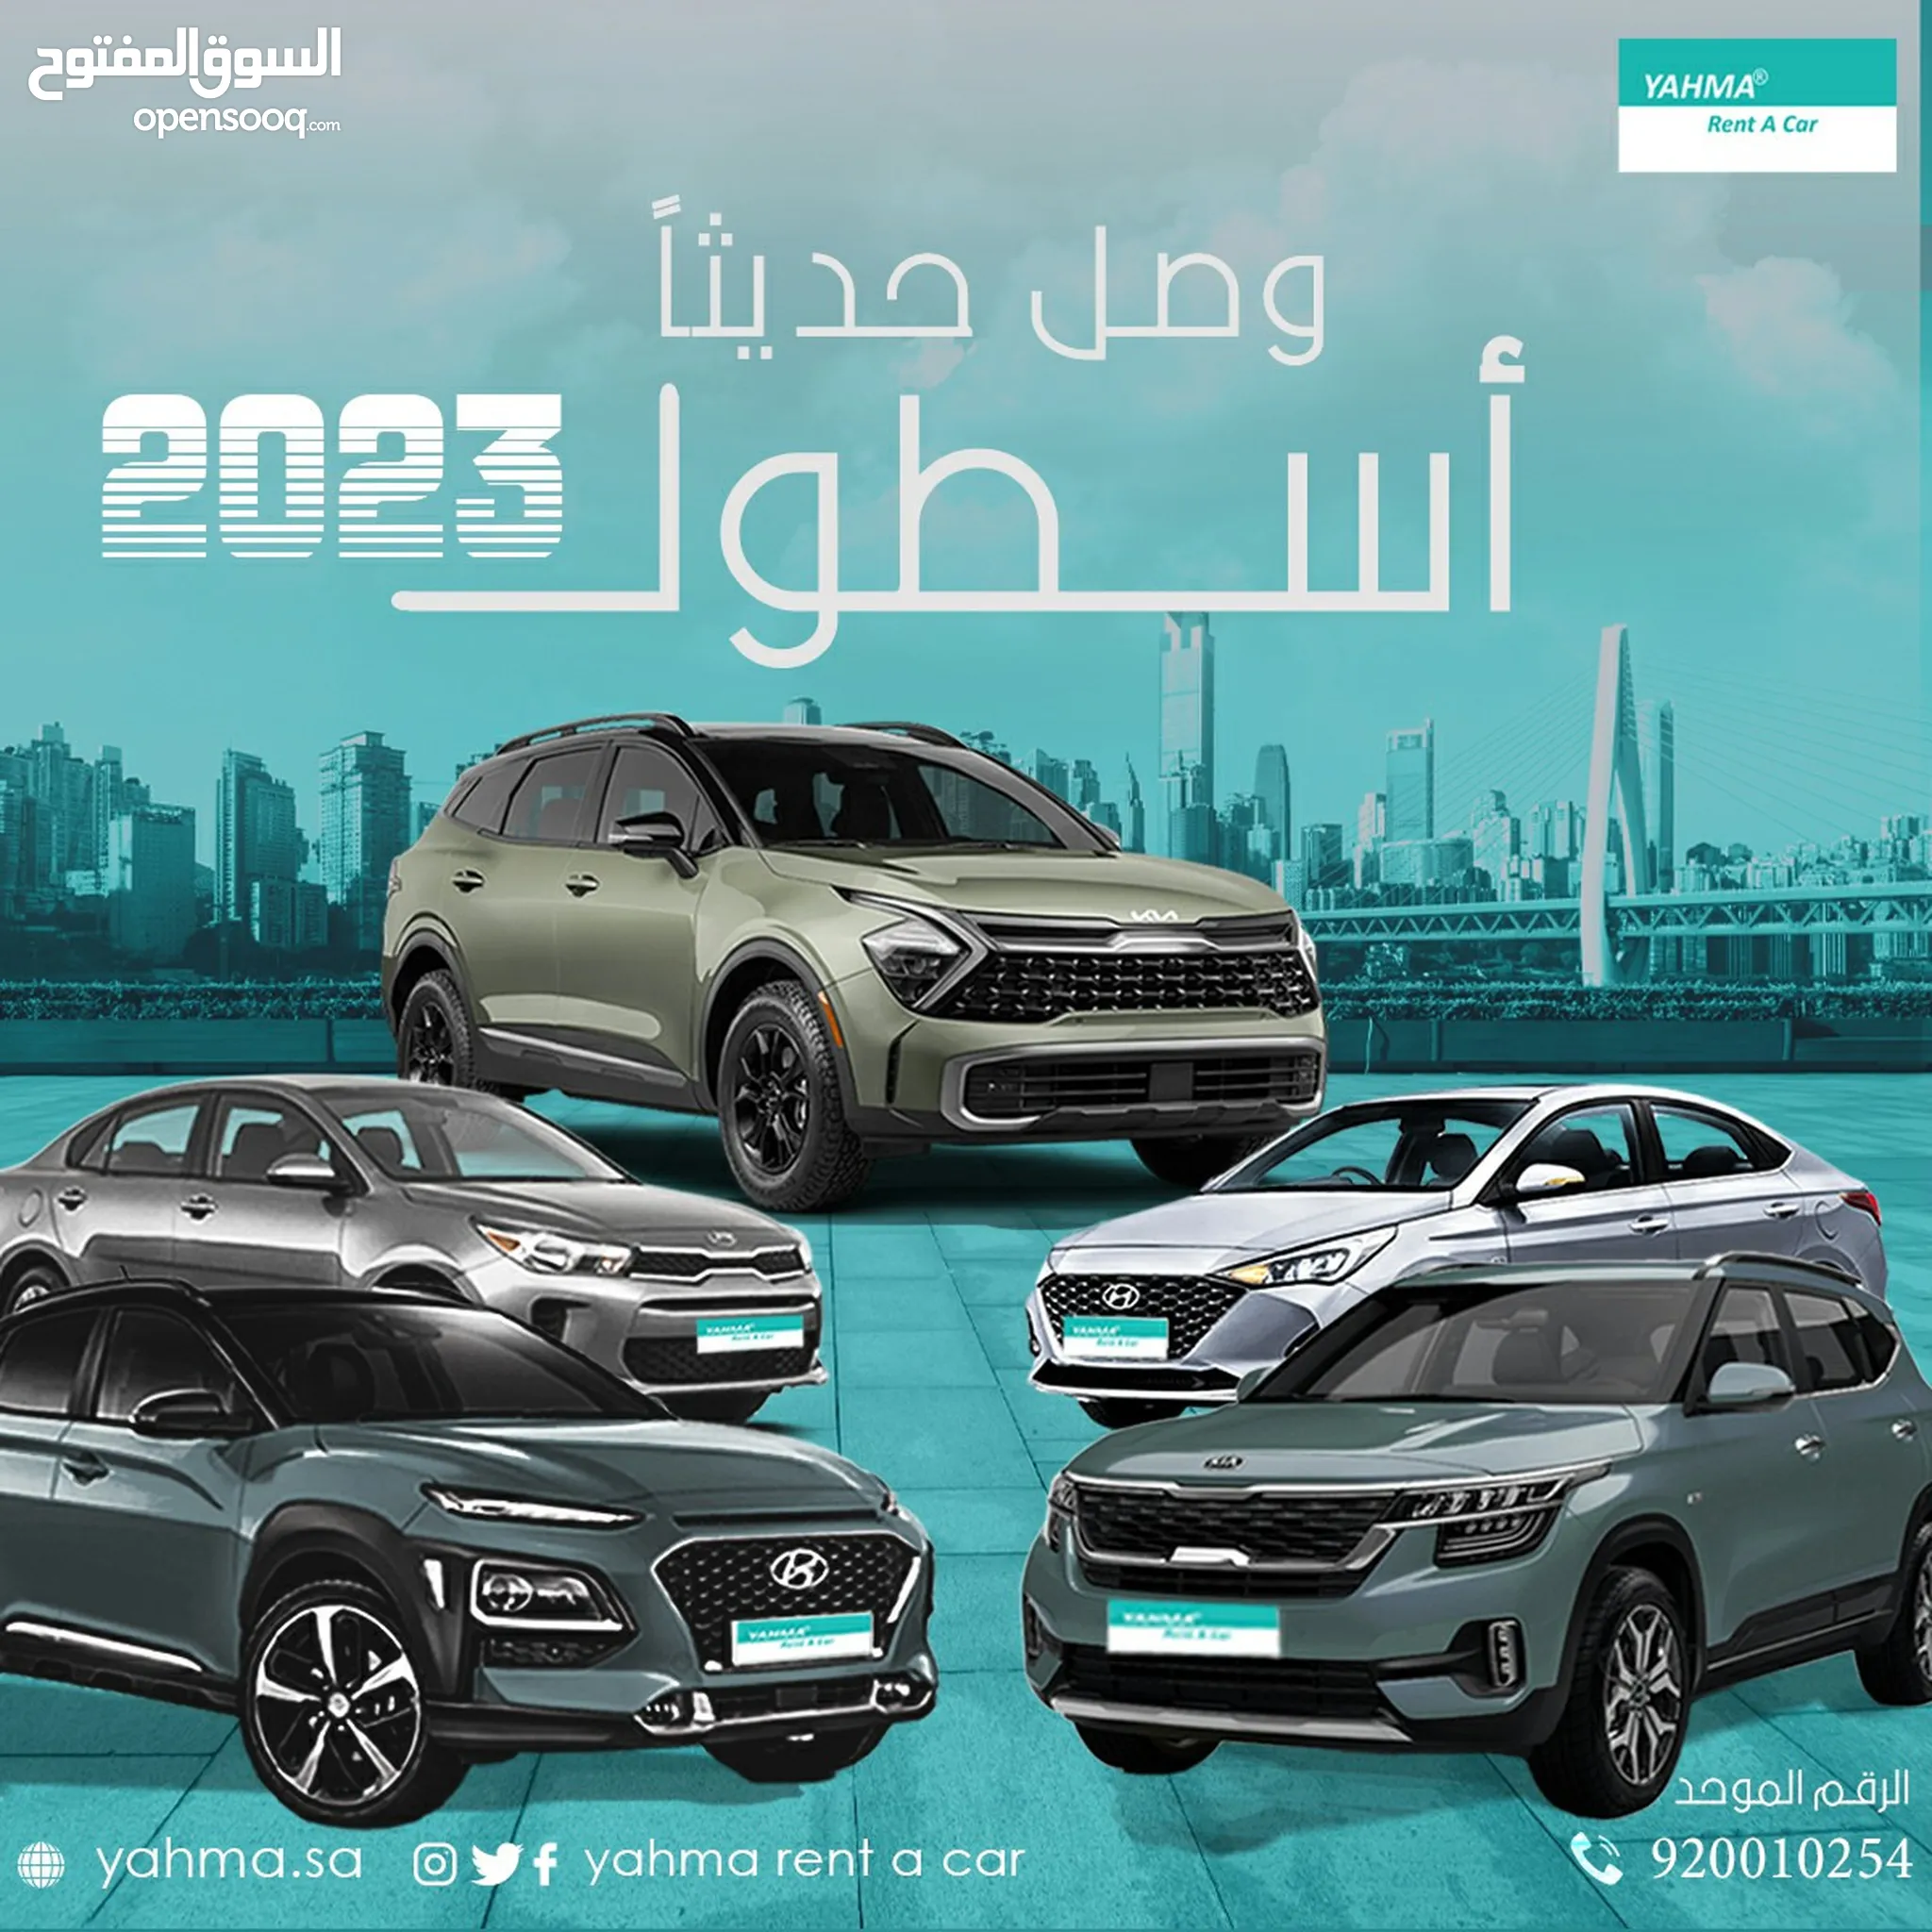 تأجير سيارات في الرياض : مكتب تأجير سيارات : ايجار : يومي, شهري : أفضل سعر  | السوق المفتوح